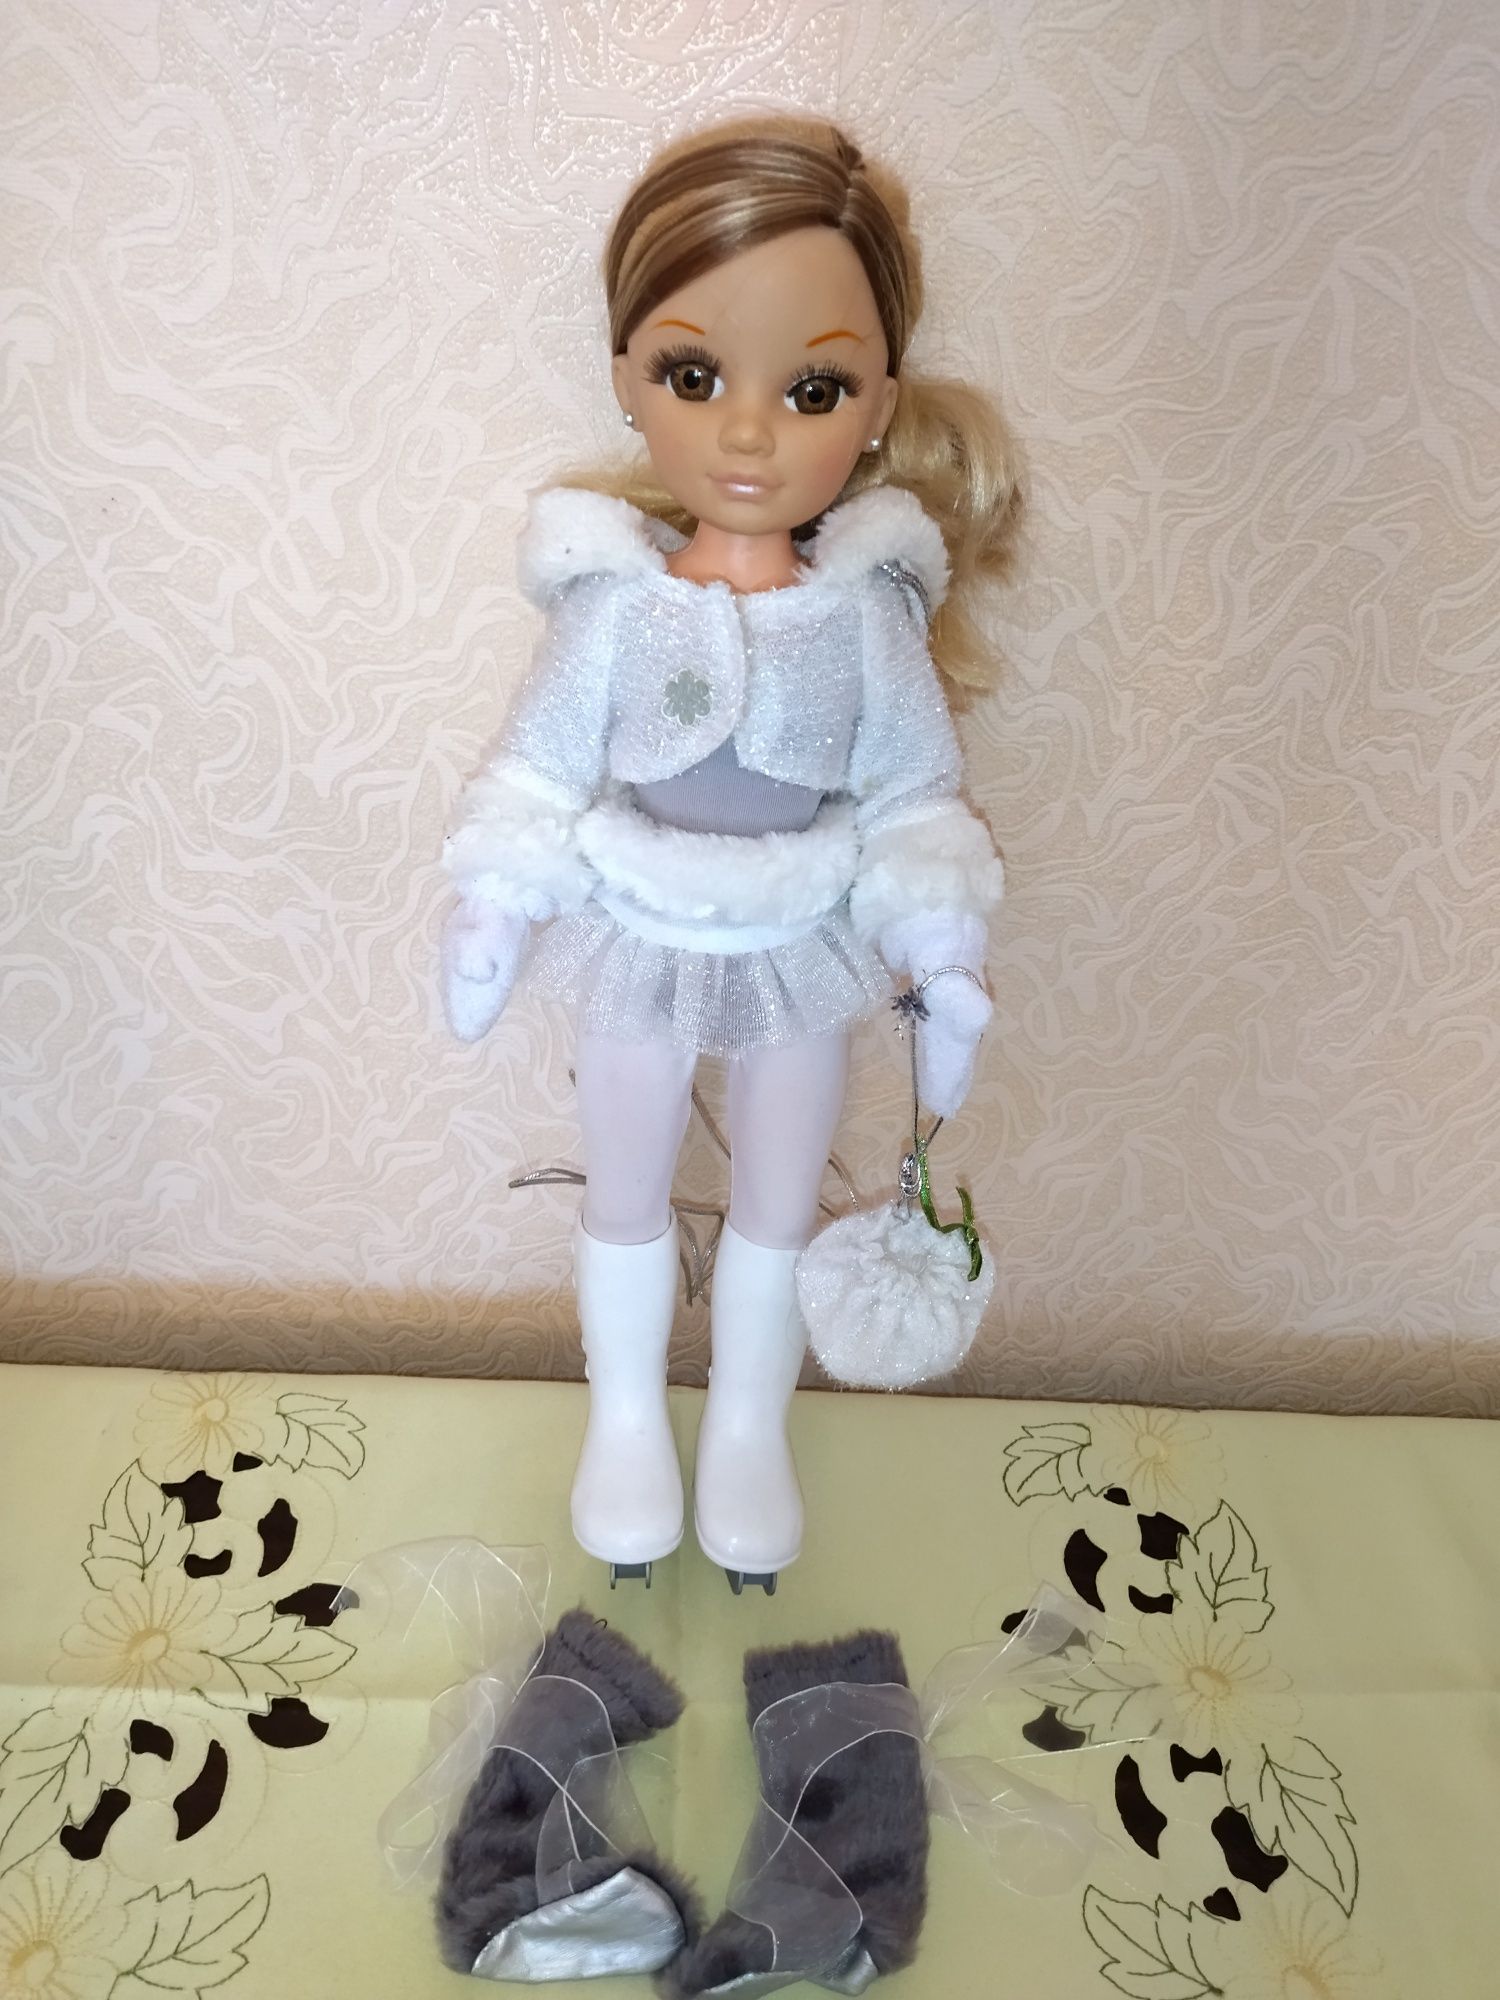 Продам очень красивую новую испанскую куклу Famosa Nency 45 см